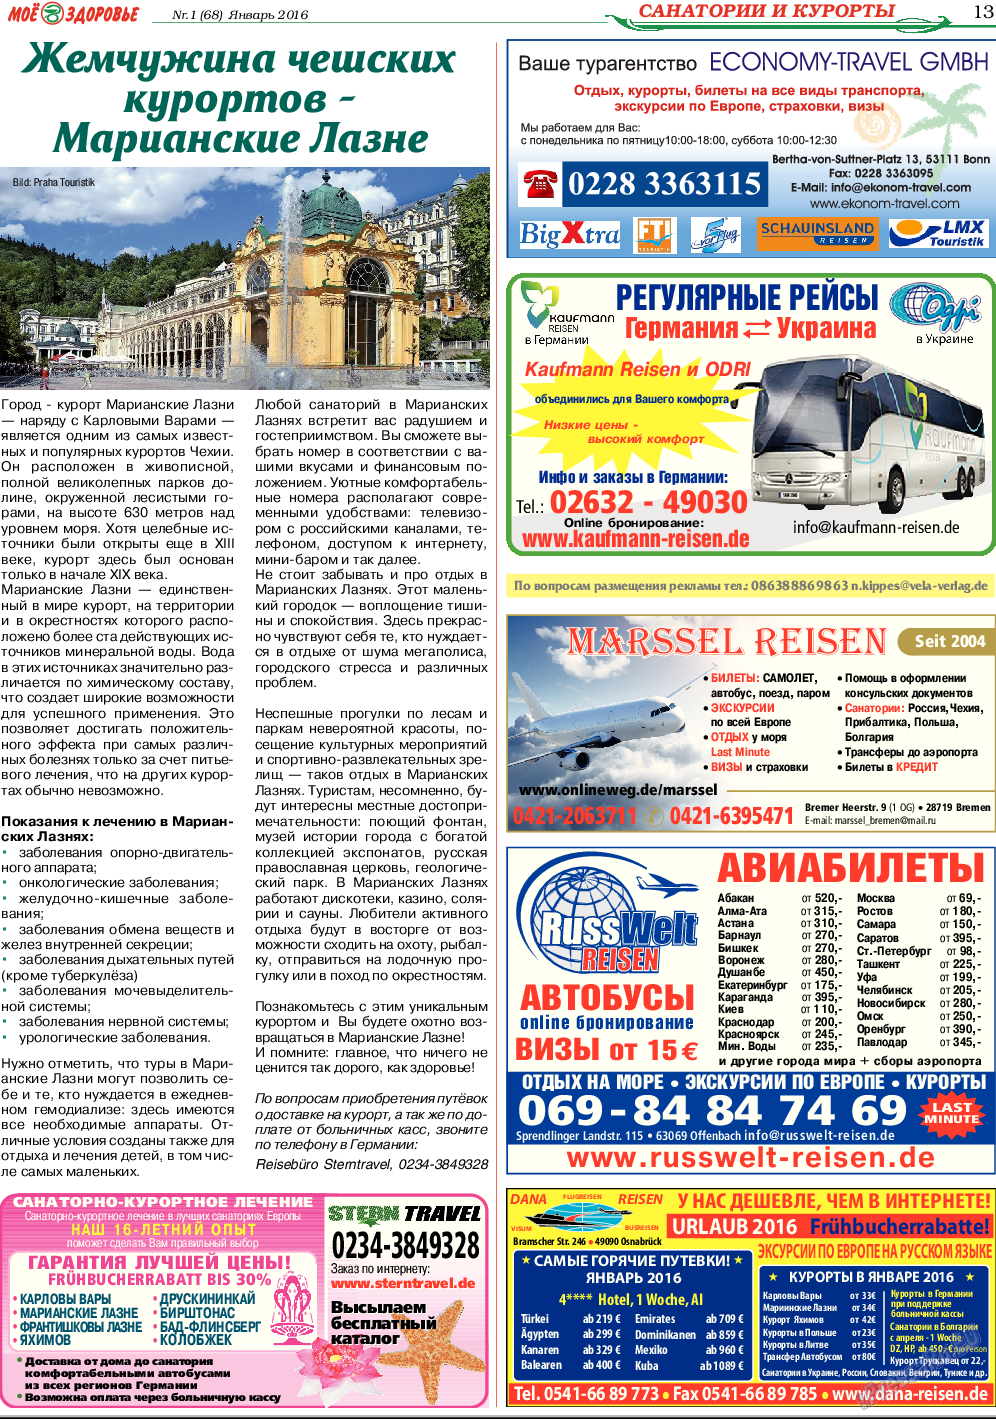 Кругозор, газета. 2016 №1 стр.13